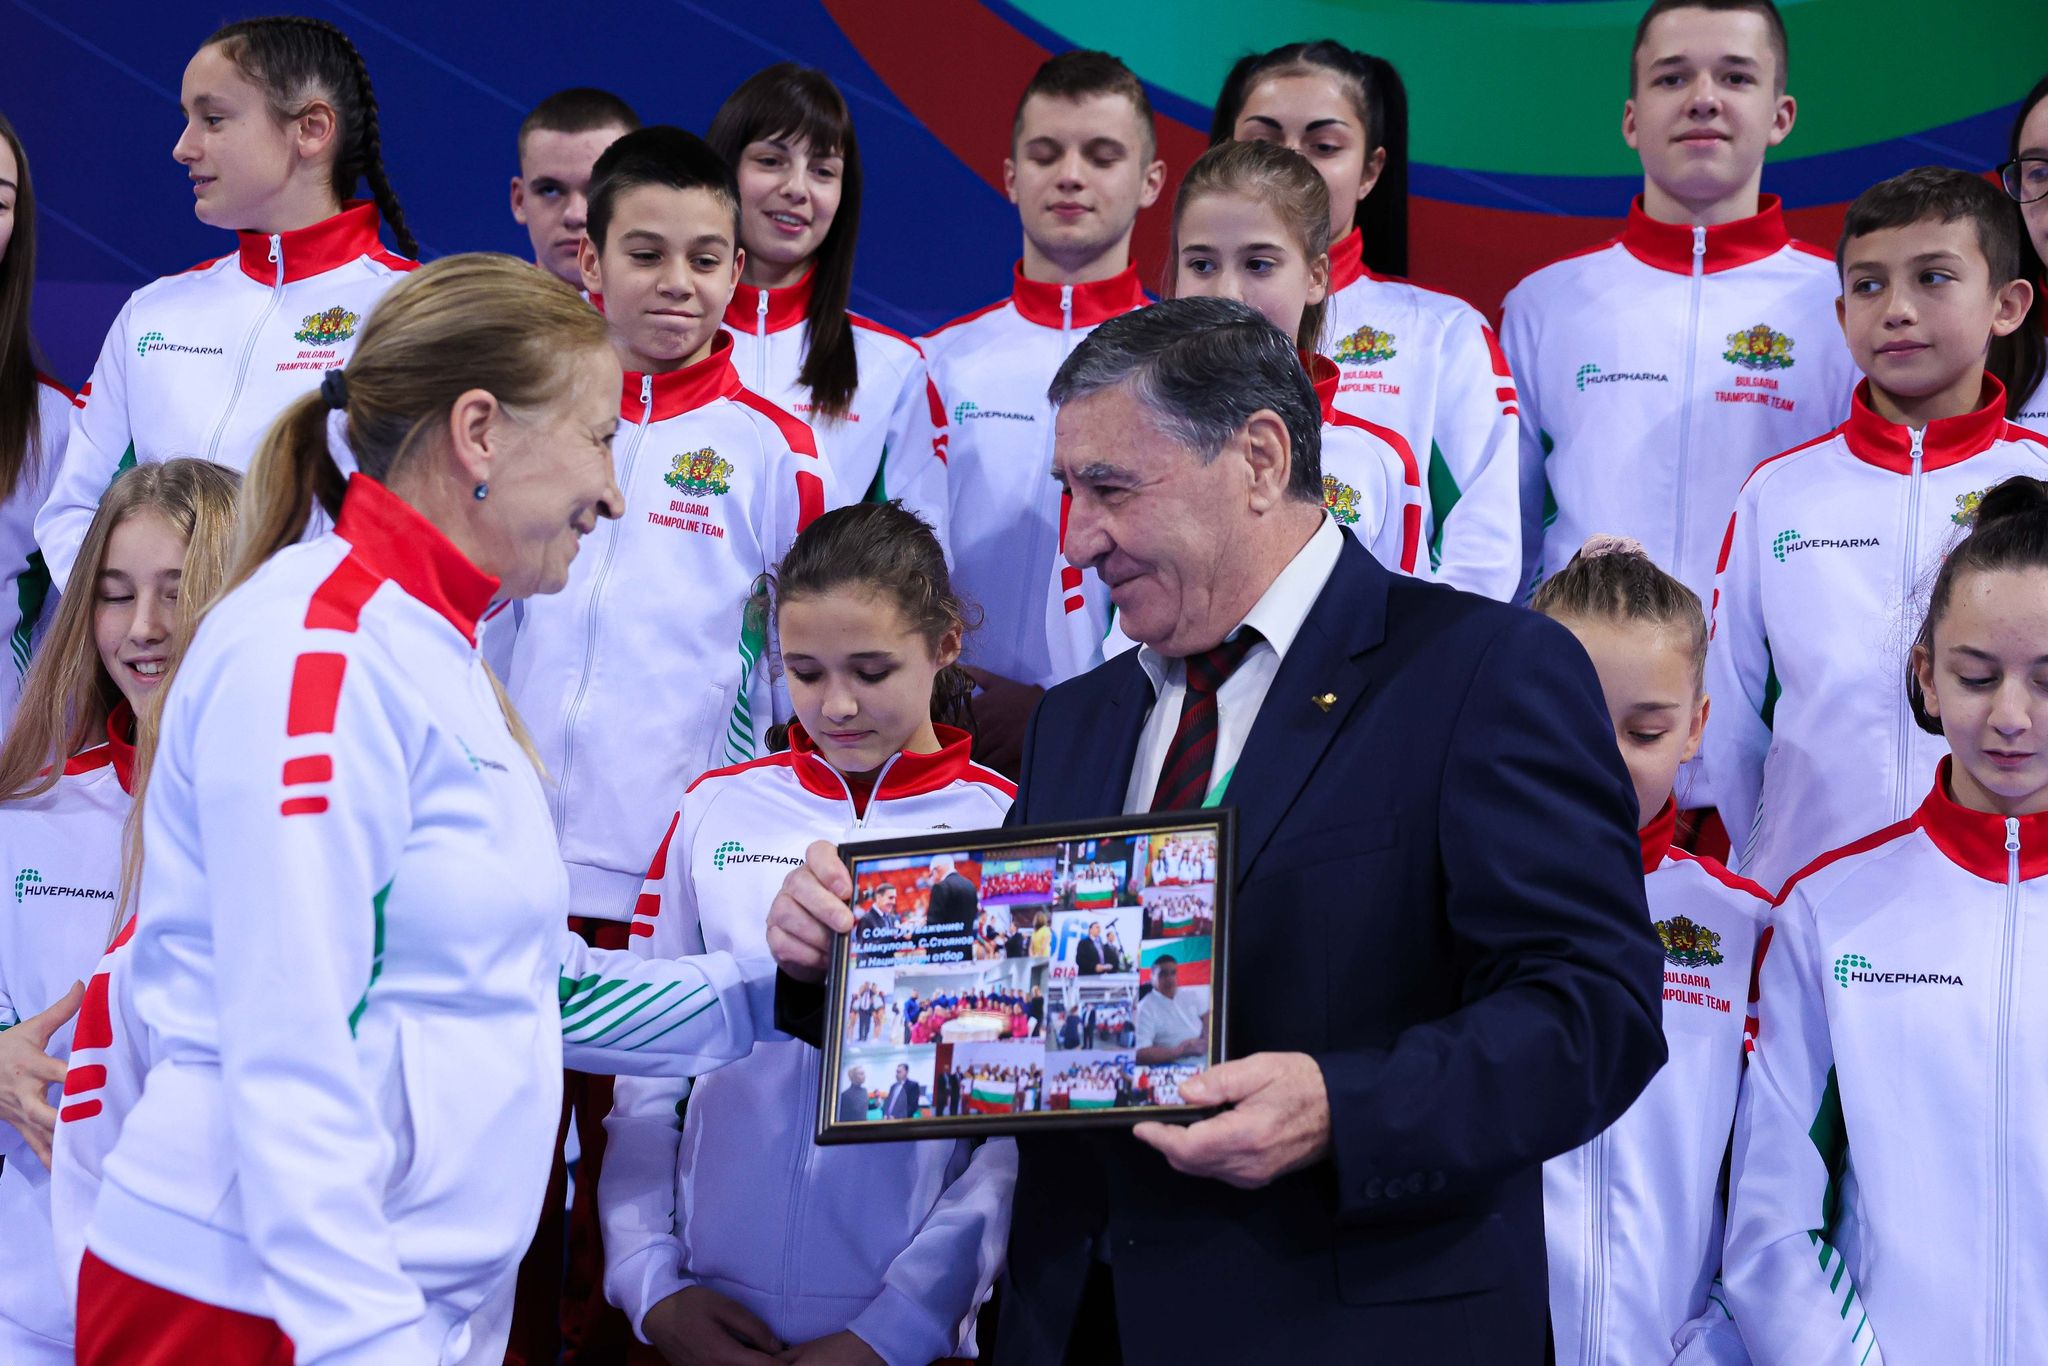 Президентът на БФ Скокове на батут Стоян Димитров празнува своя 77-и рожден ден в „Арена София“ днес по време на Световното първенство в София